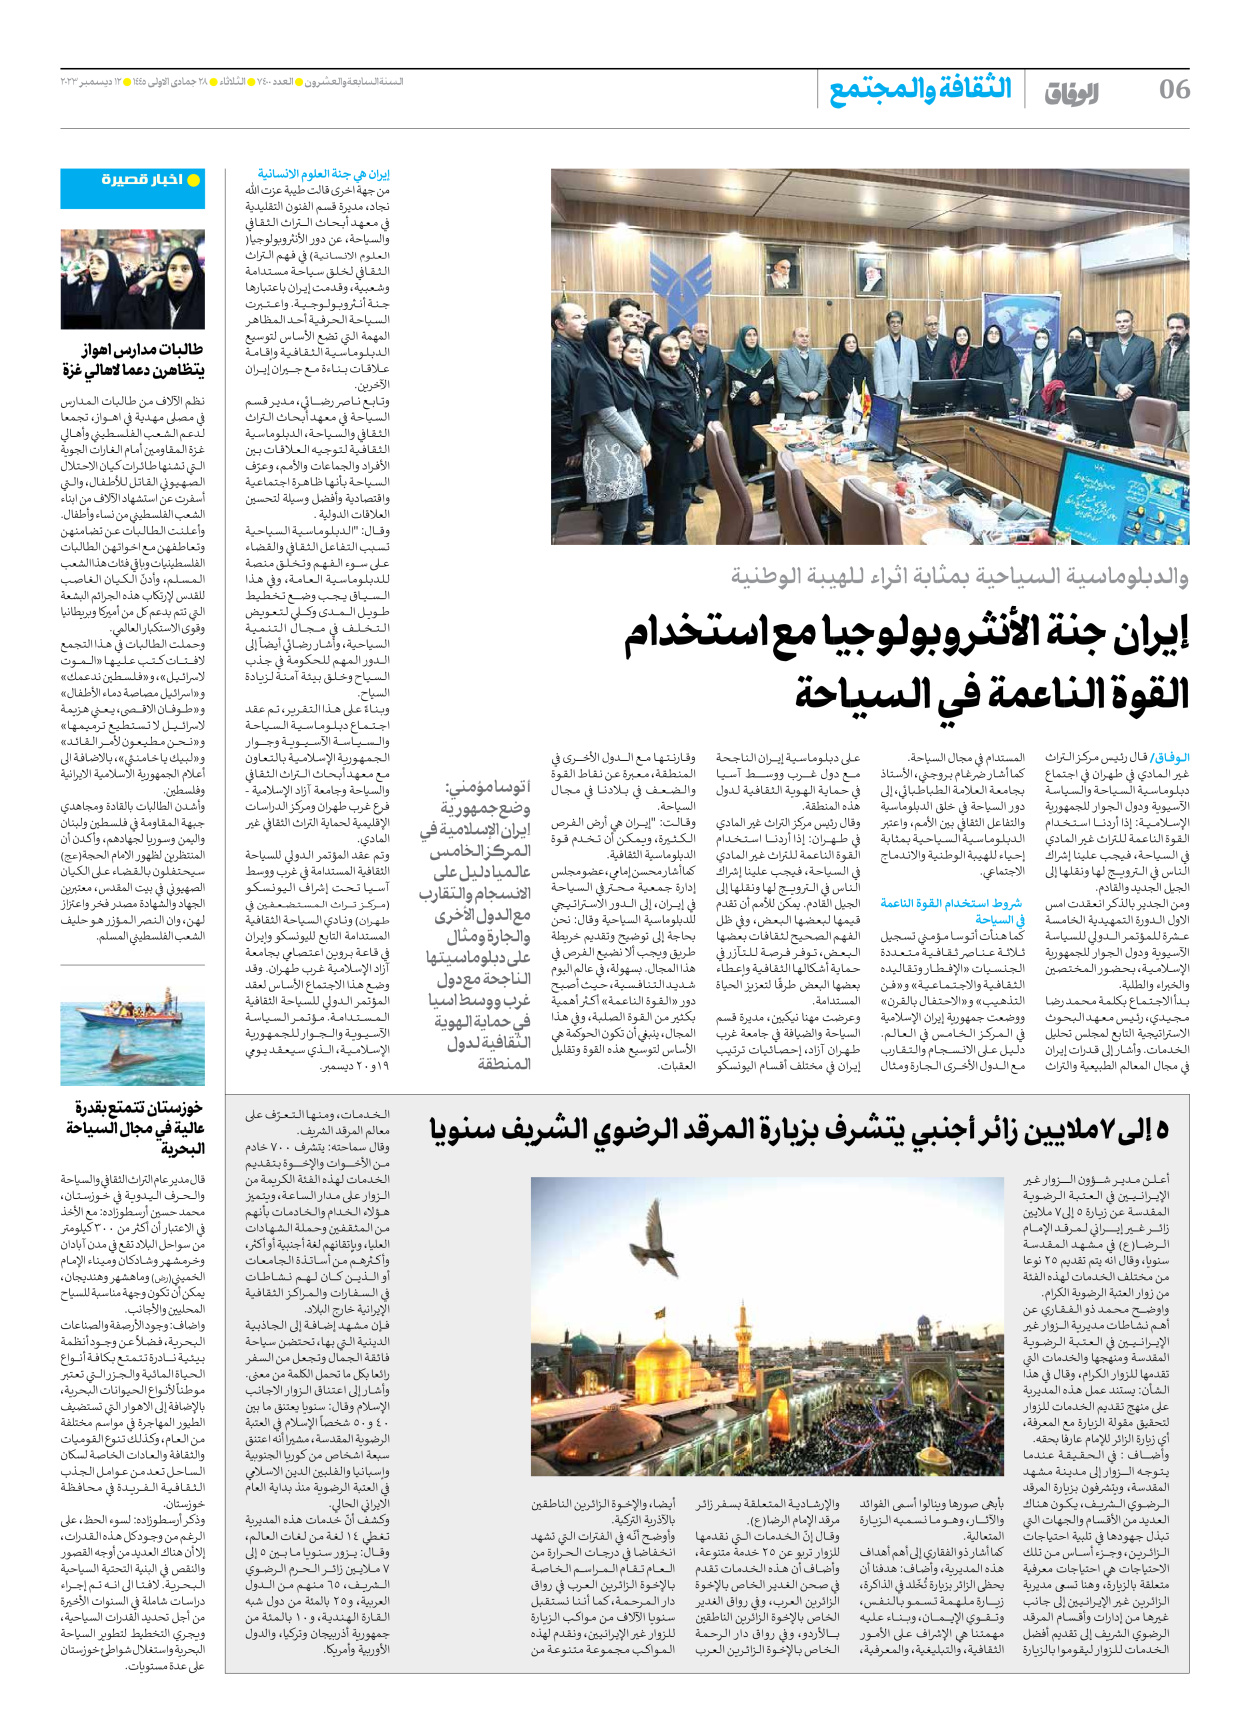 صحیفة ایران الدولیة الوفاق - العدد سبعة آلاف وأربعمائة - ١٢ ديسمبر ٢٠٢٣ - الصفحة ٦